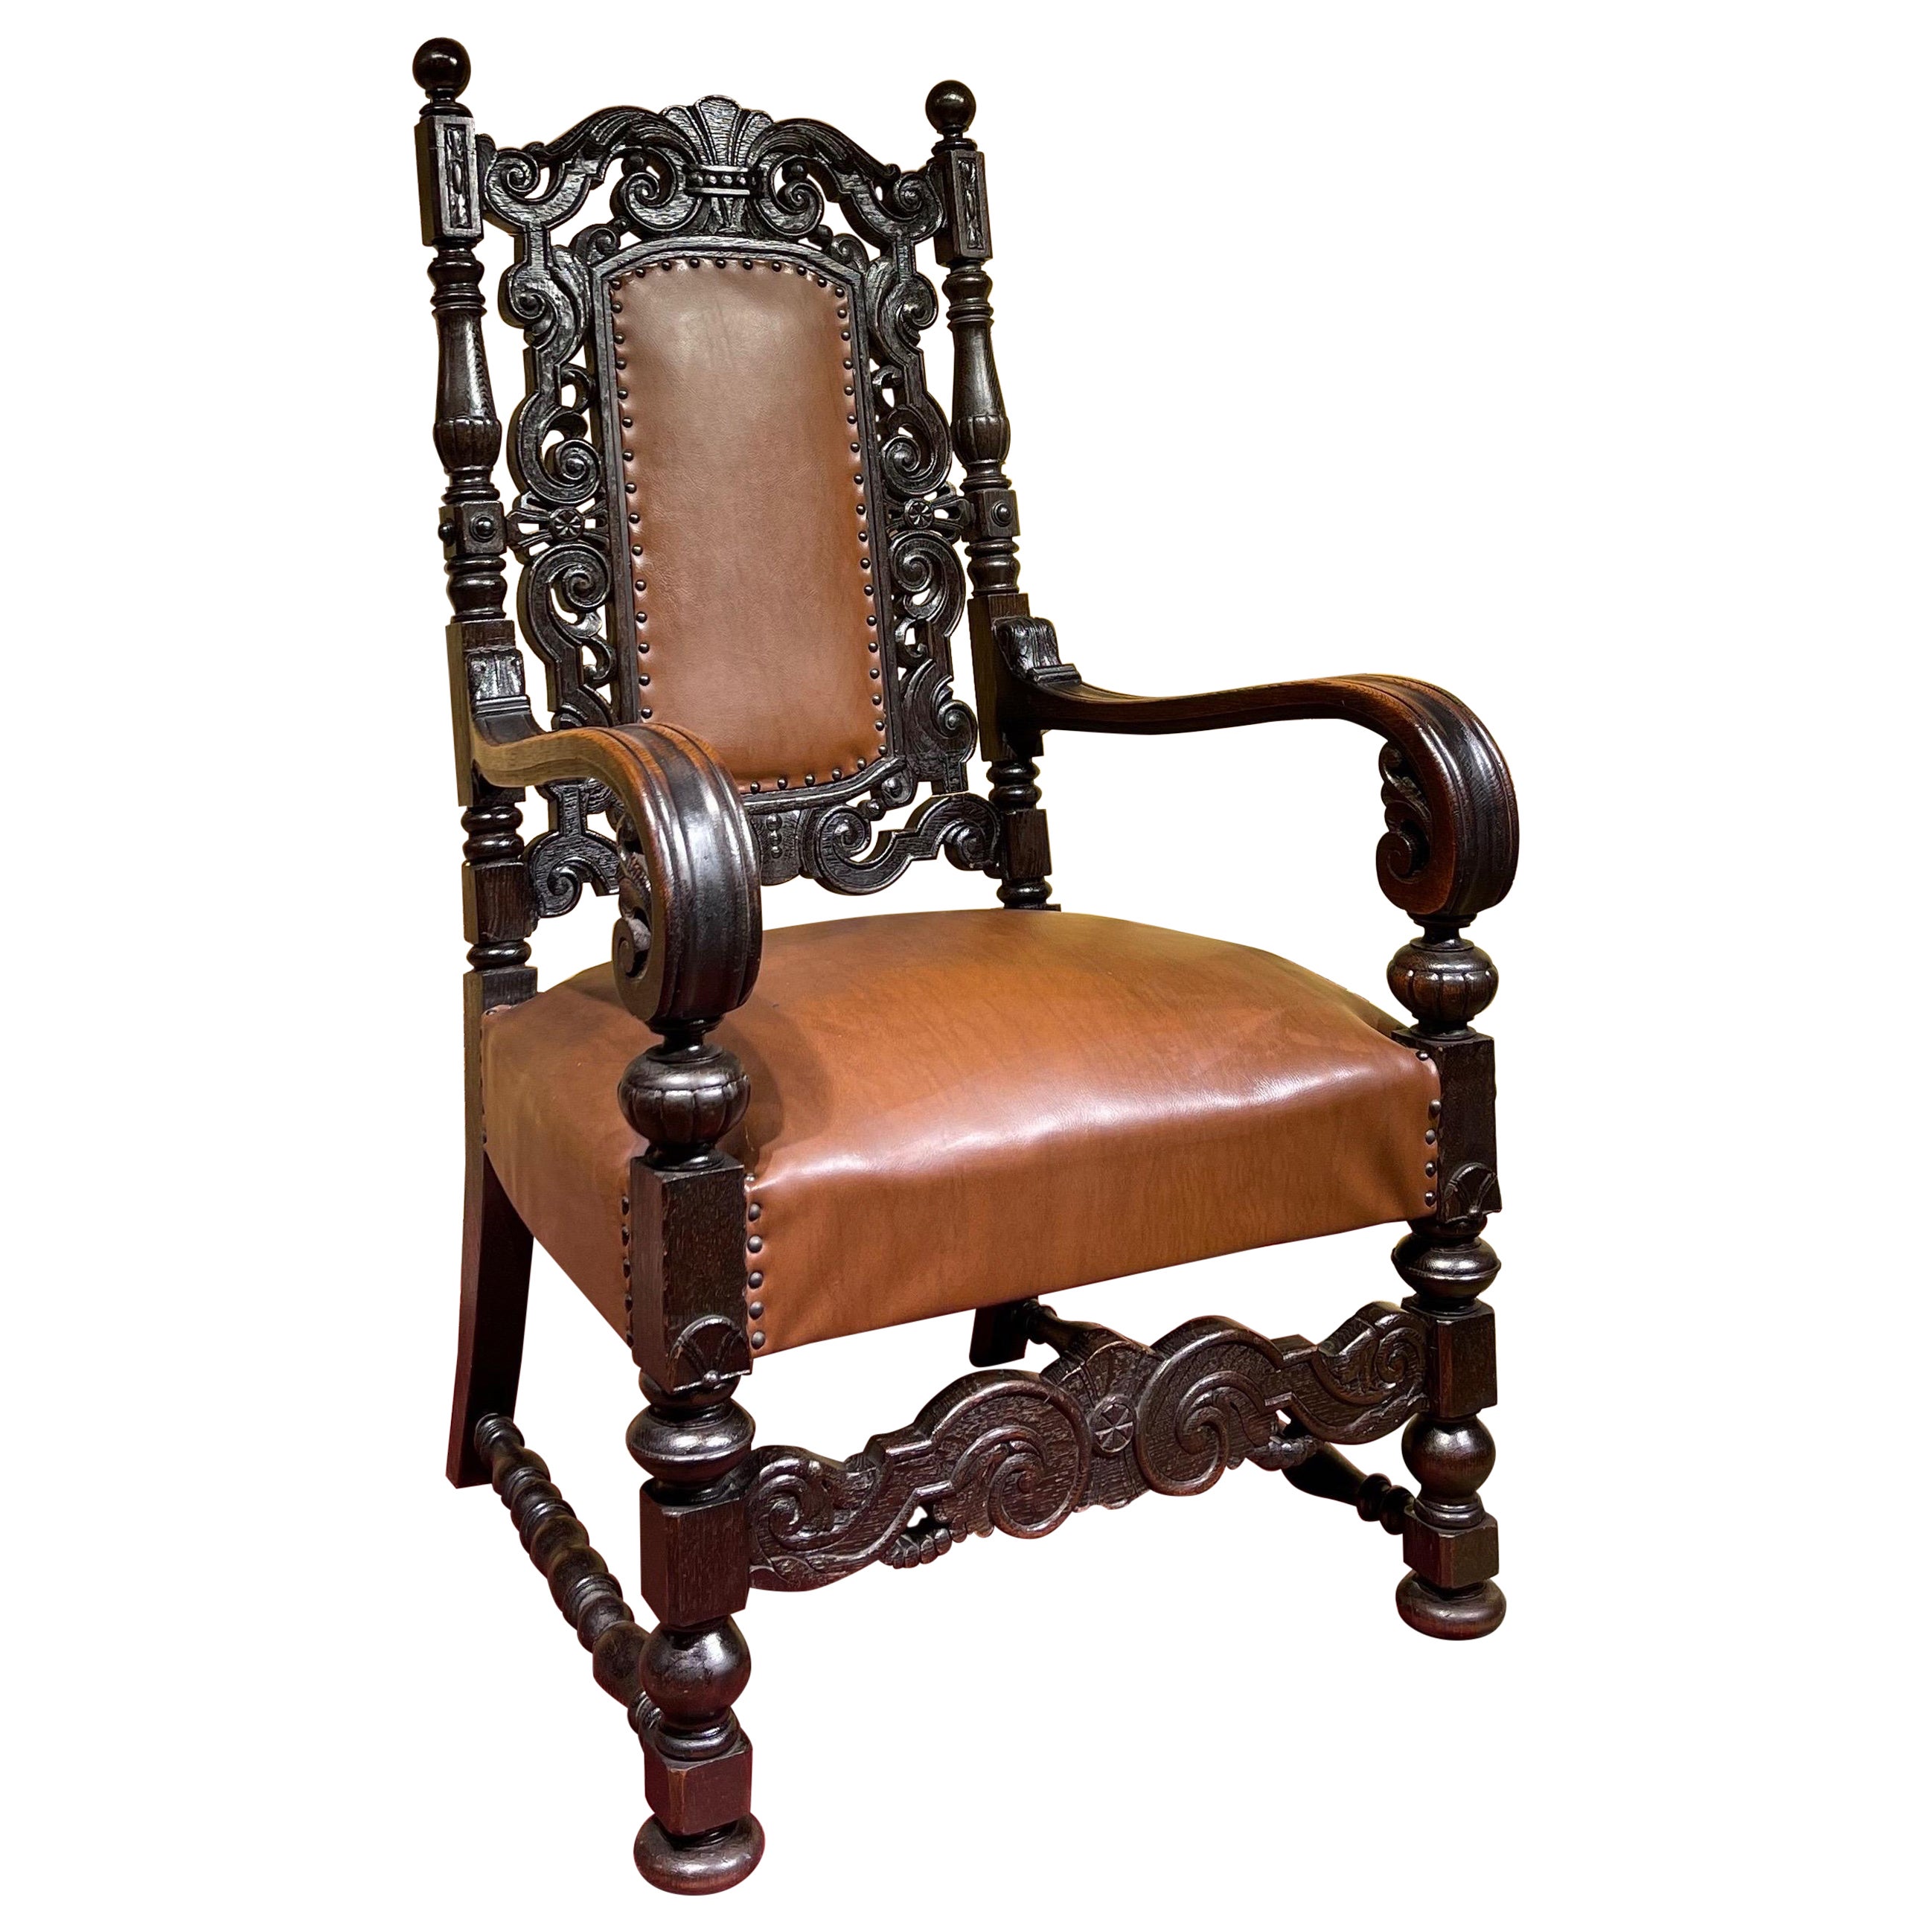 19th Century Throne Chair, Historicism around 1880, Oak